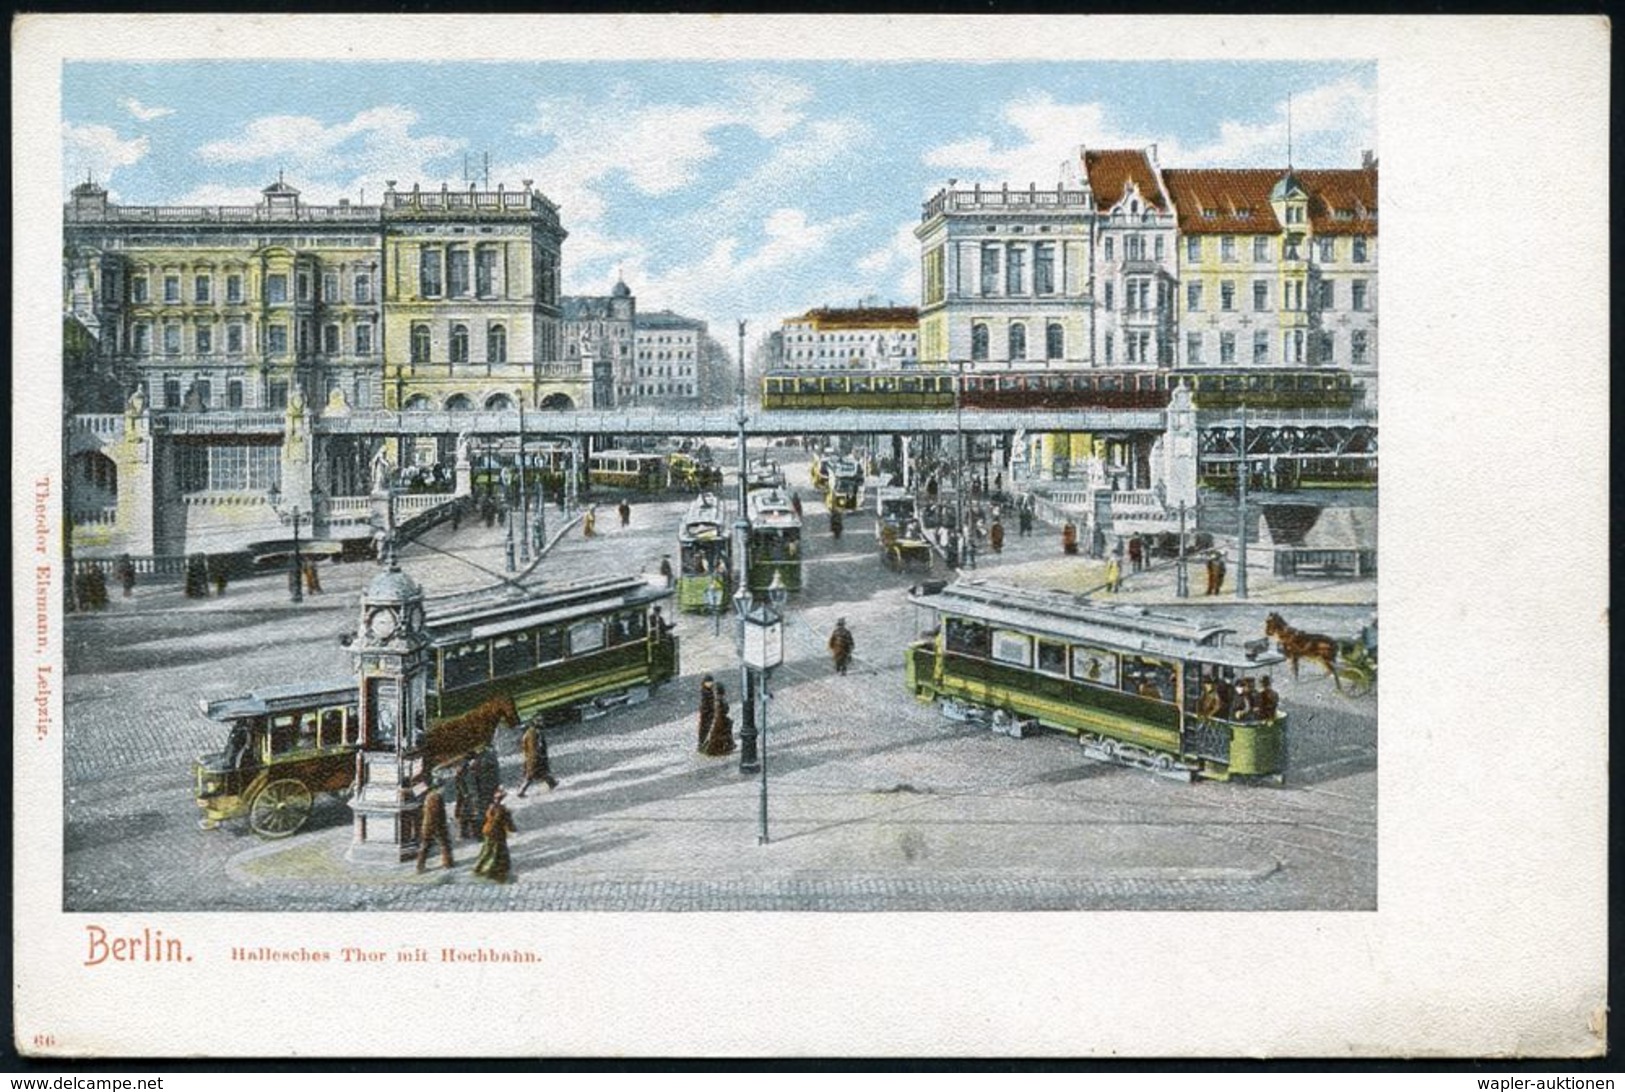 UNTERGRUNDBAHN /U-BAHN : Berlin-Kreuzberg 1905/15 U-Bahnhof Hallesches Tor, 10 Verschiedene Color-Foto-Ak. , Meist Gebr. - Eisenbahnen